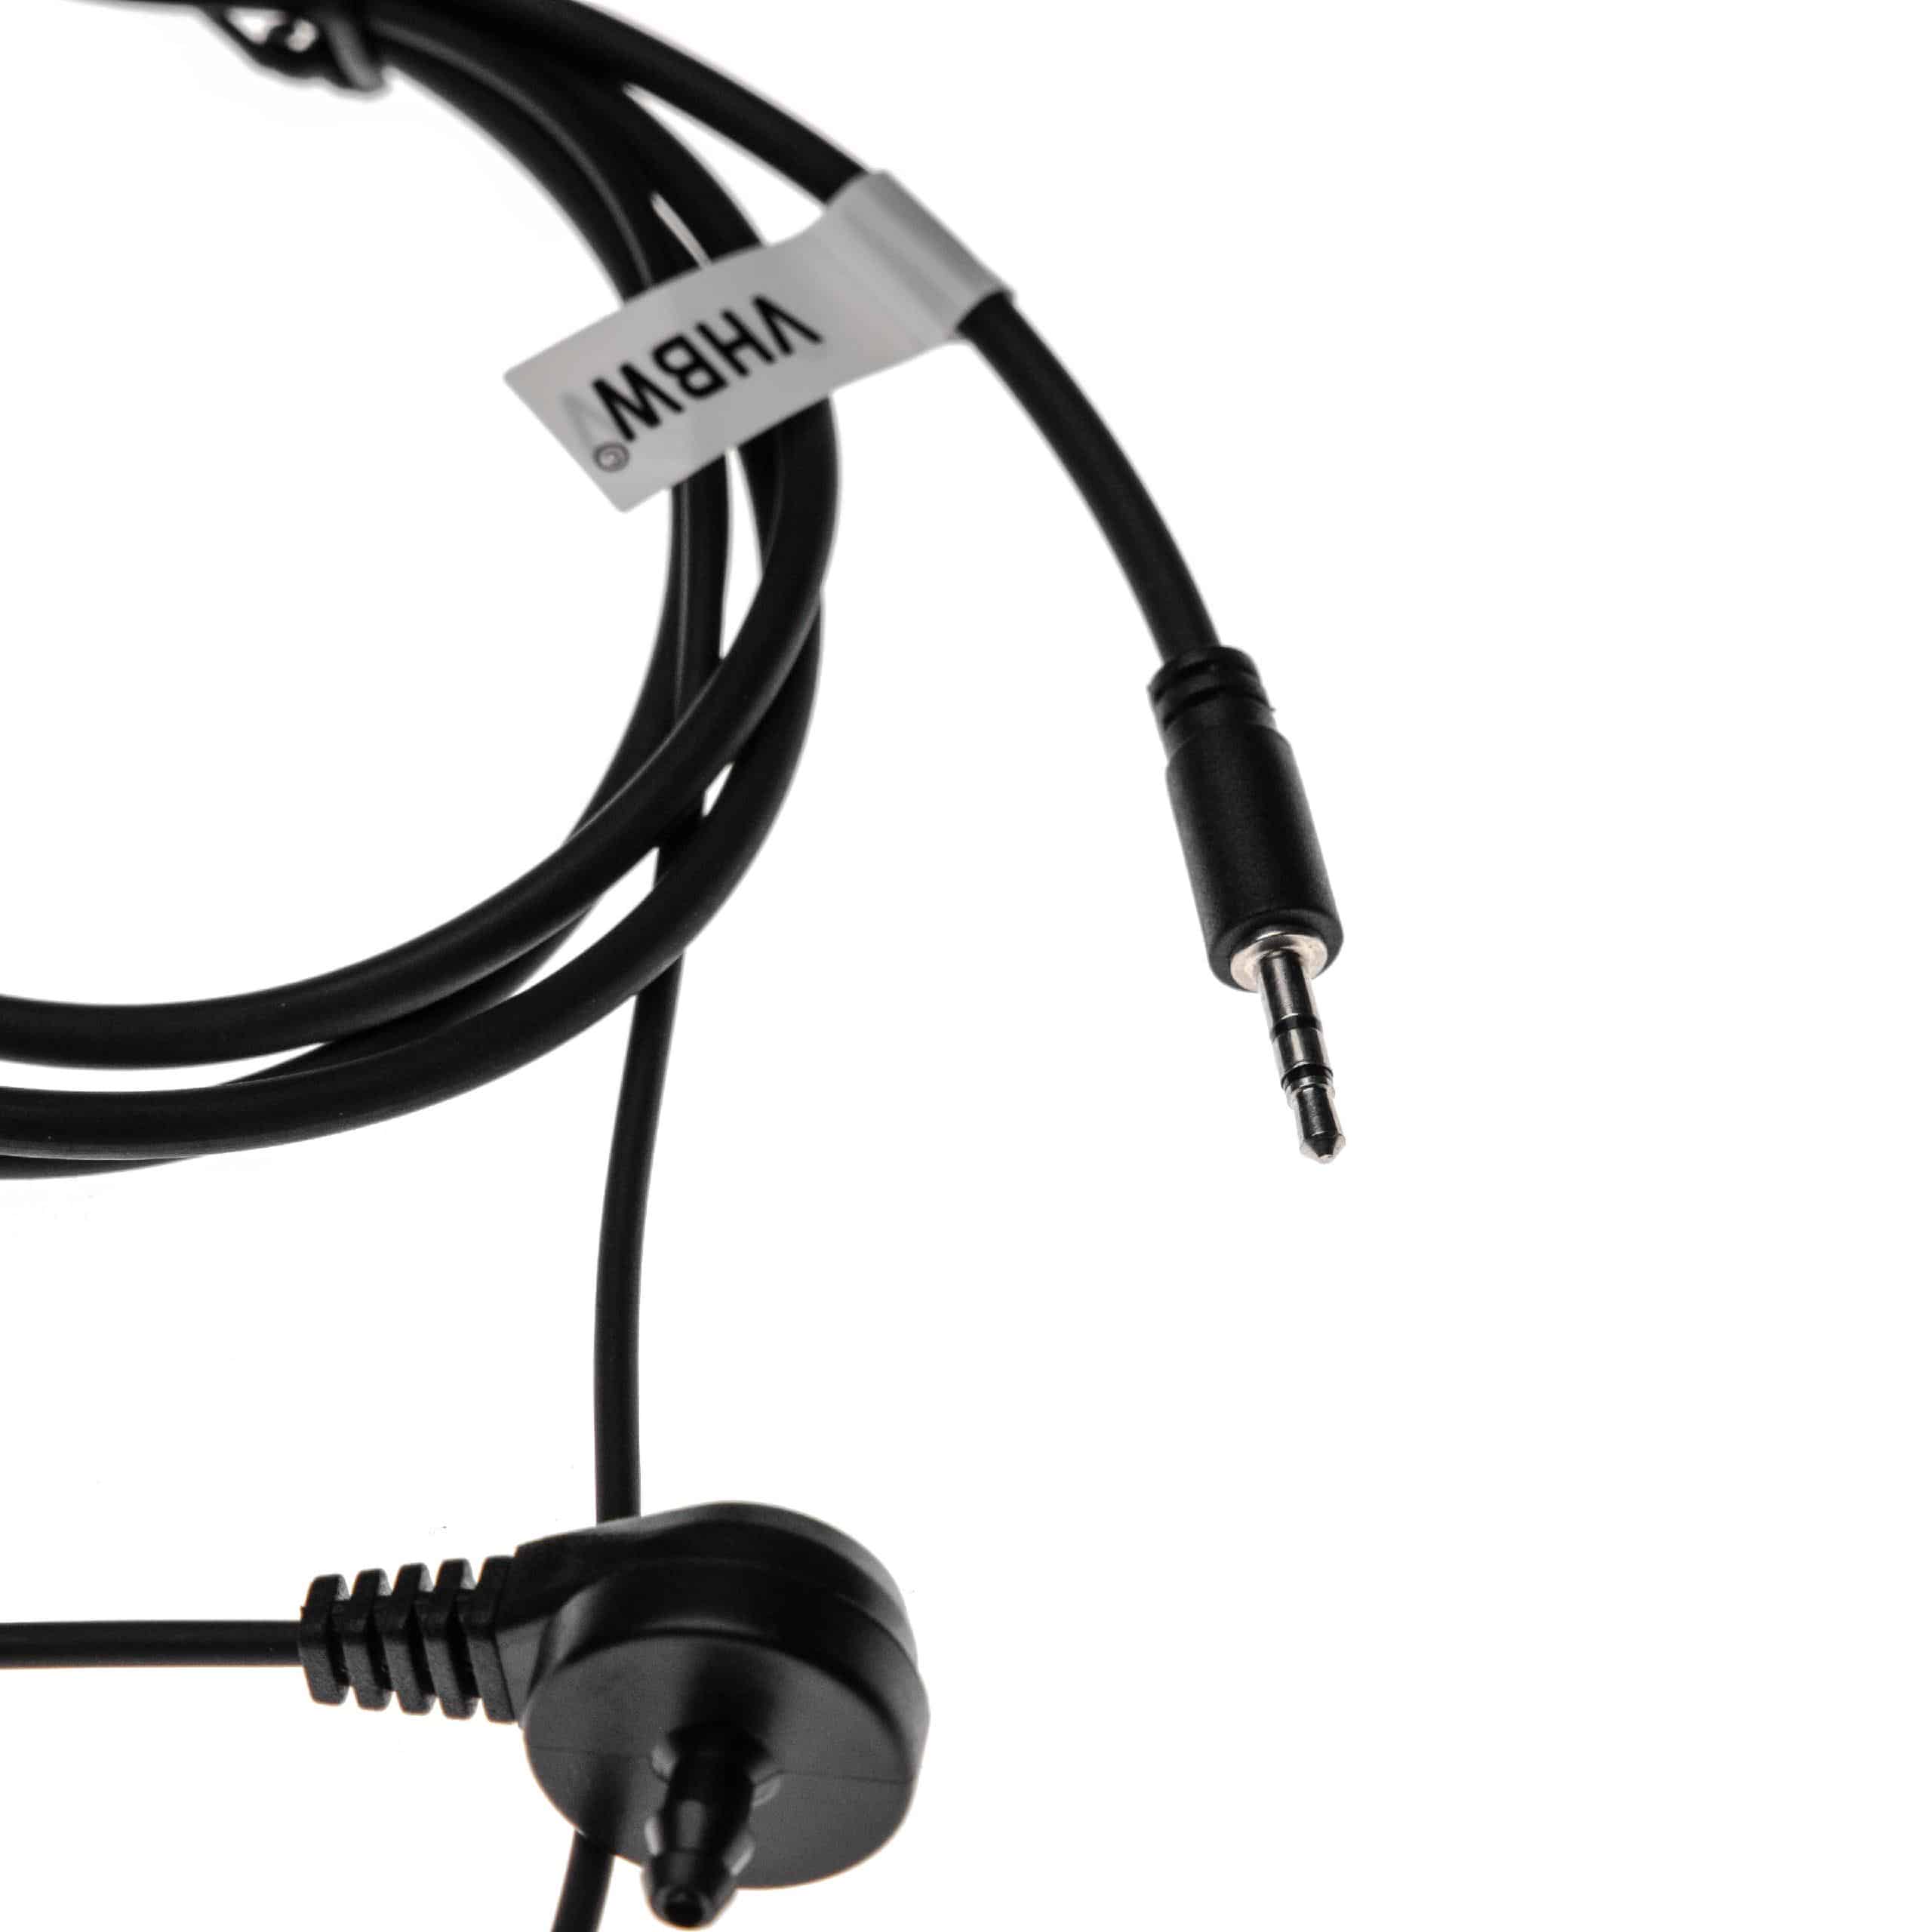 Security headset per ricetrasmittente Cobra PR240 - trasparente / nero + microfono push-to-talk + supporto a c